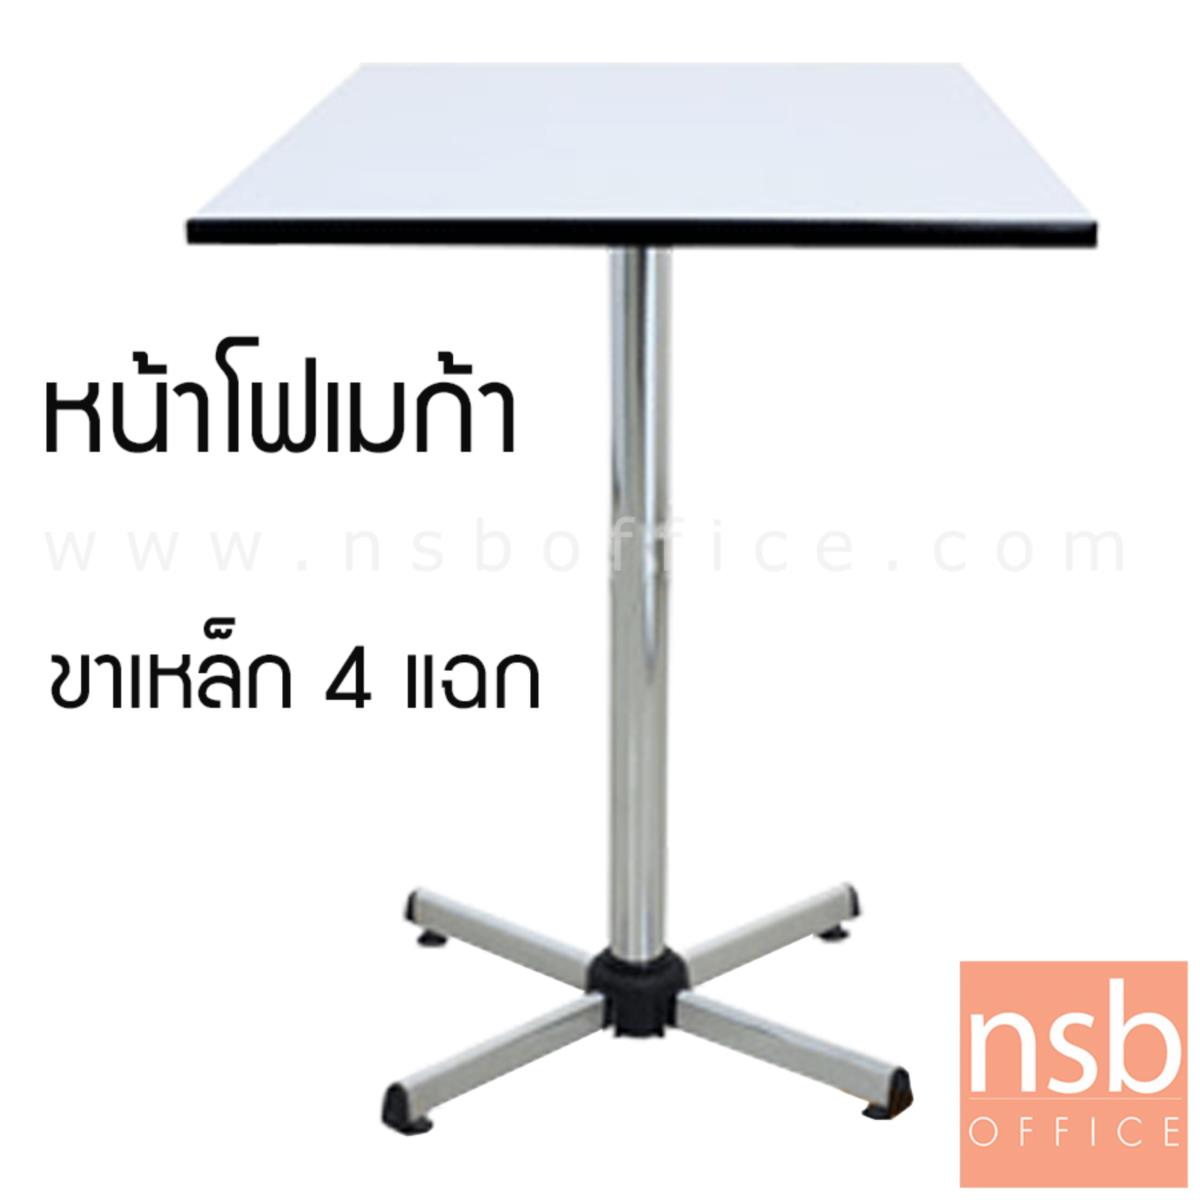 โต๊ะหน้าโฟเมก้าขาว รุ่น Broomsticks (บรูมสติ๊กส์) ขนาด 60W ,75W ,60Di ,75Di cm.  โครงขาเหล็ก 4 แฉกชุบโครเมี่ยม 